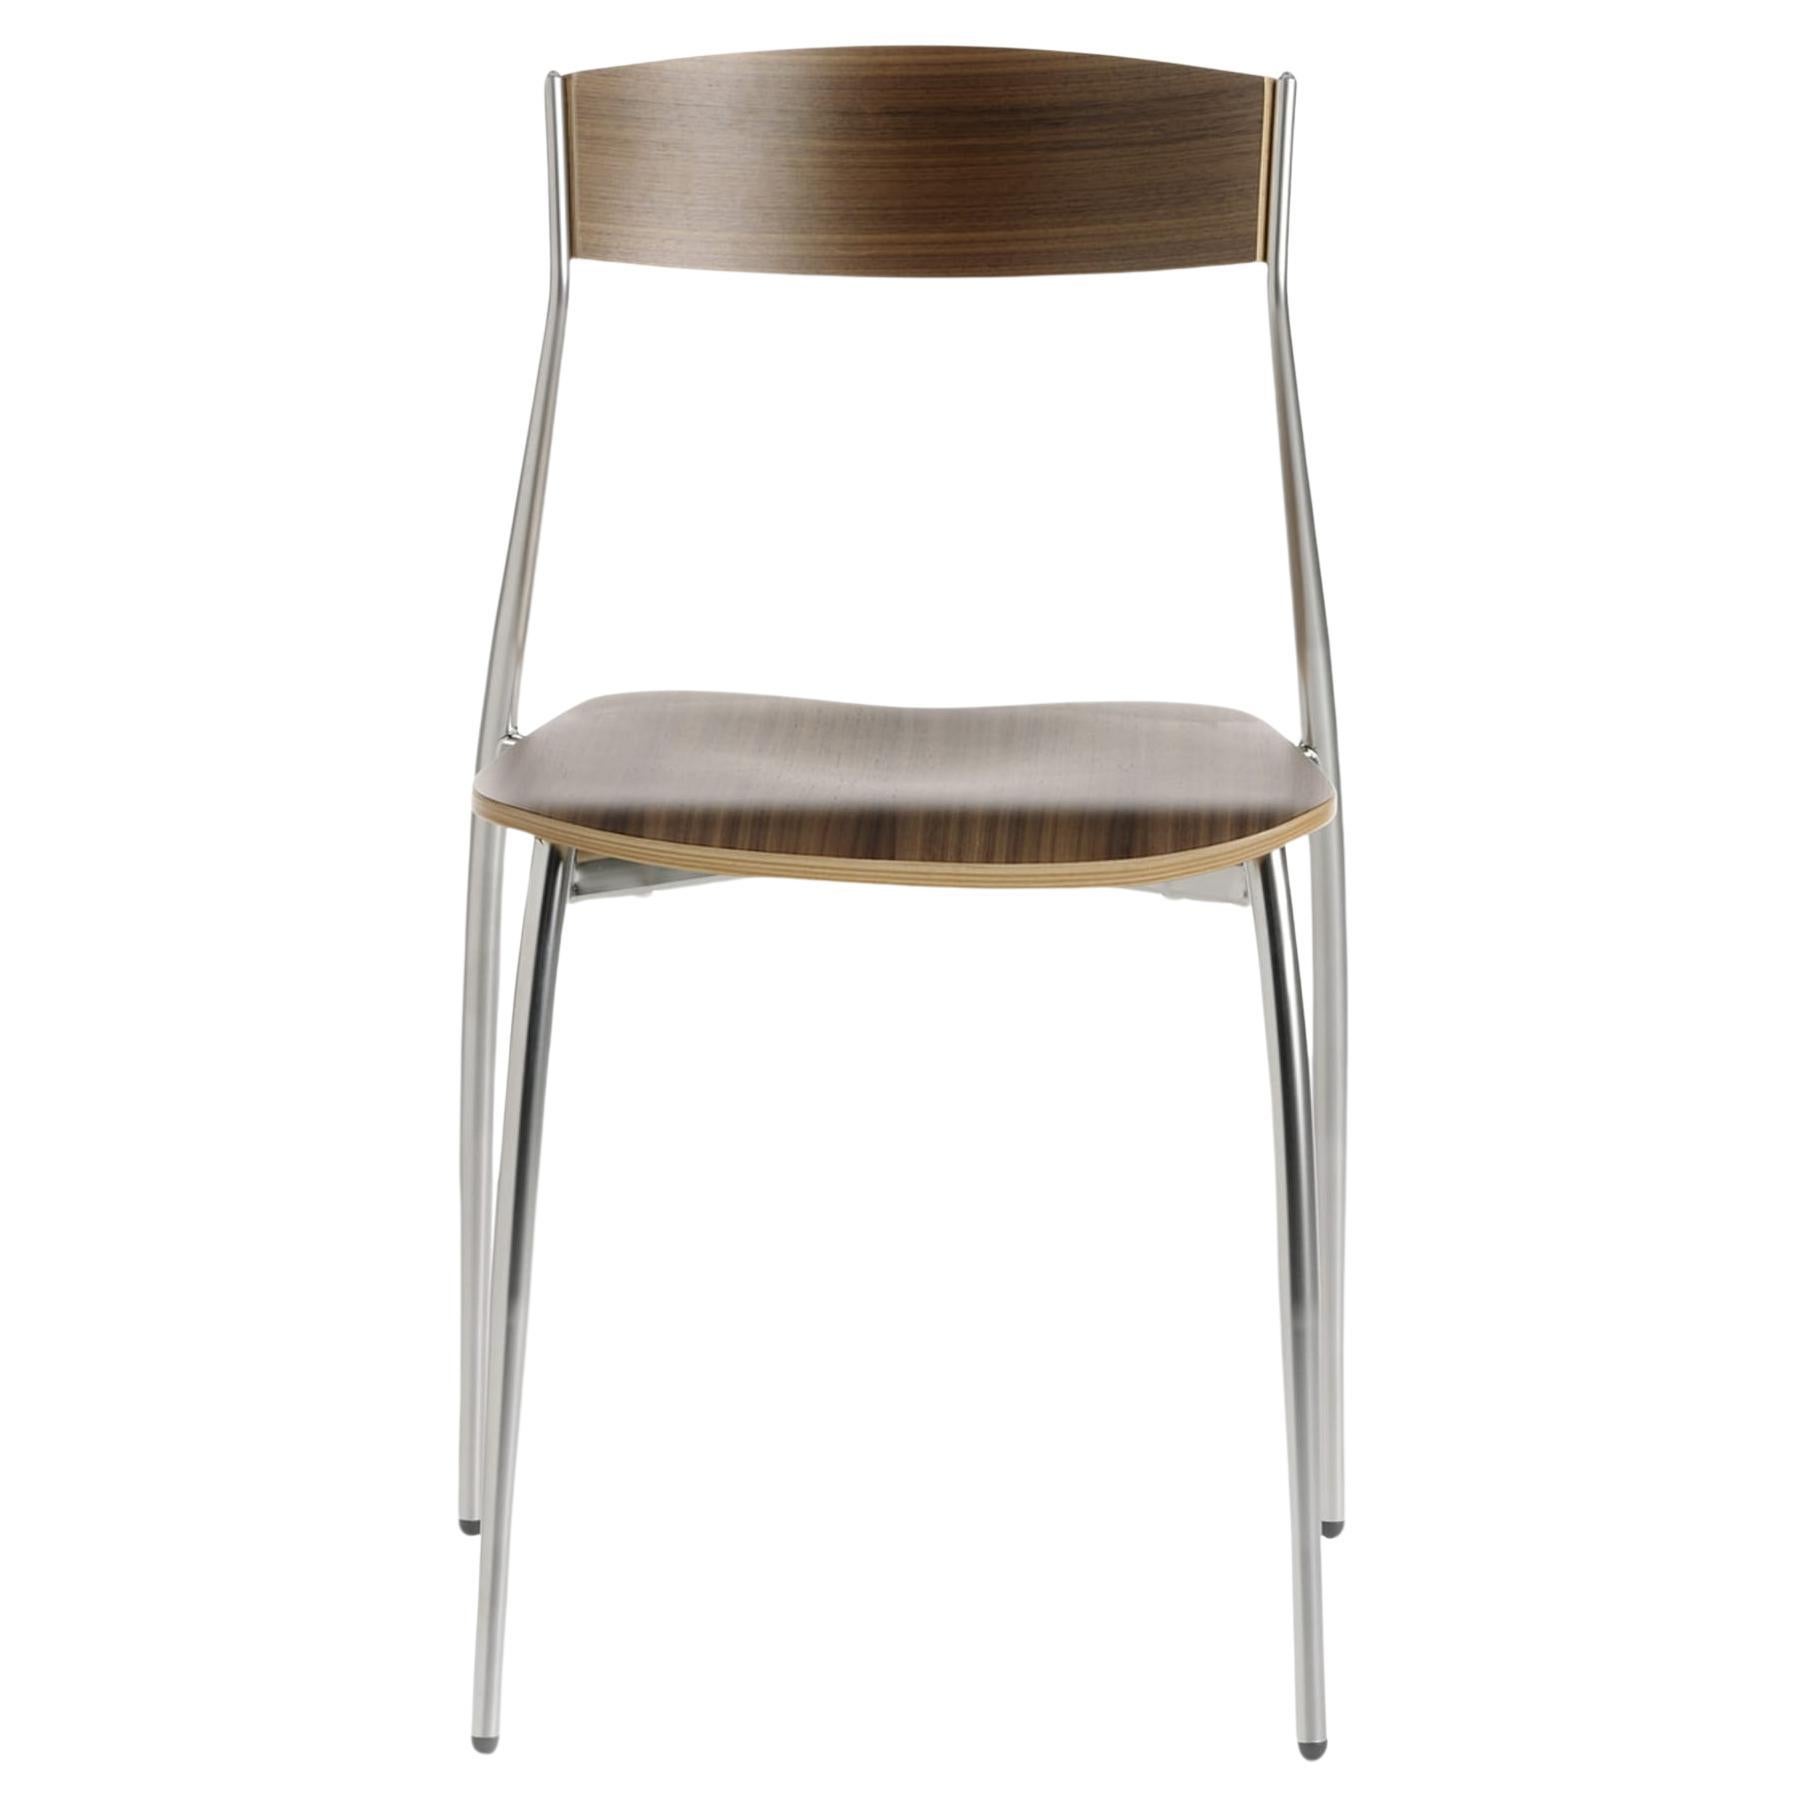 Altek Italia Design Chairs